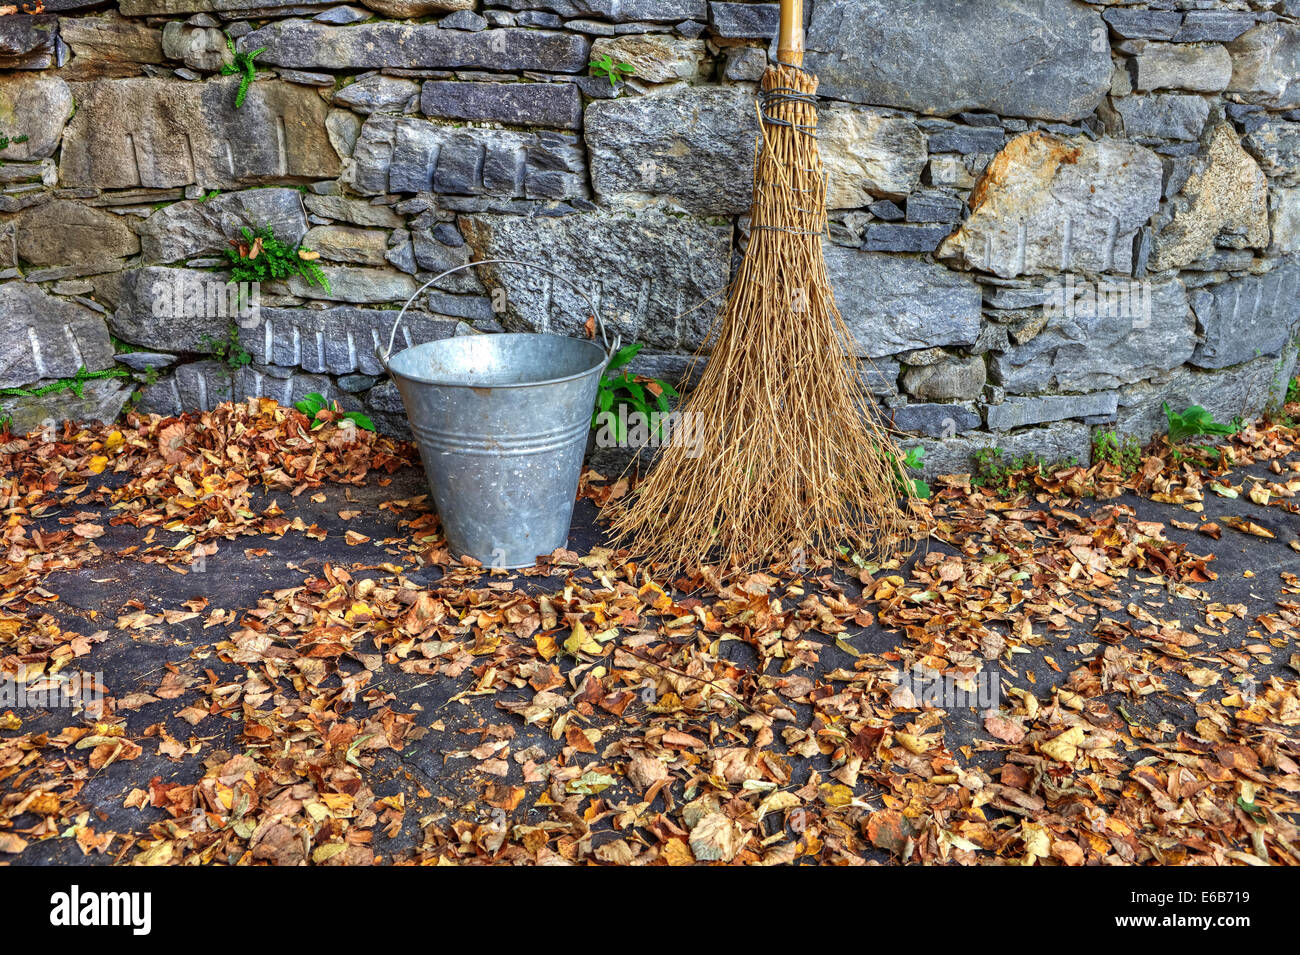 leaves,broom,bucket,broom sticks,zinc bucket Stock Photo